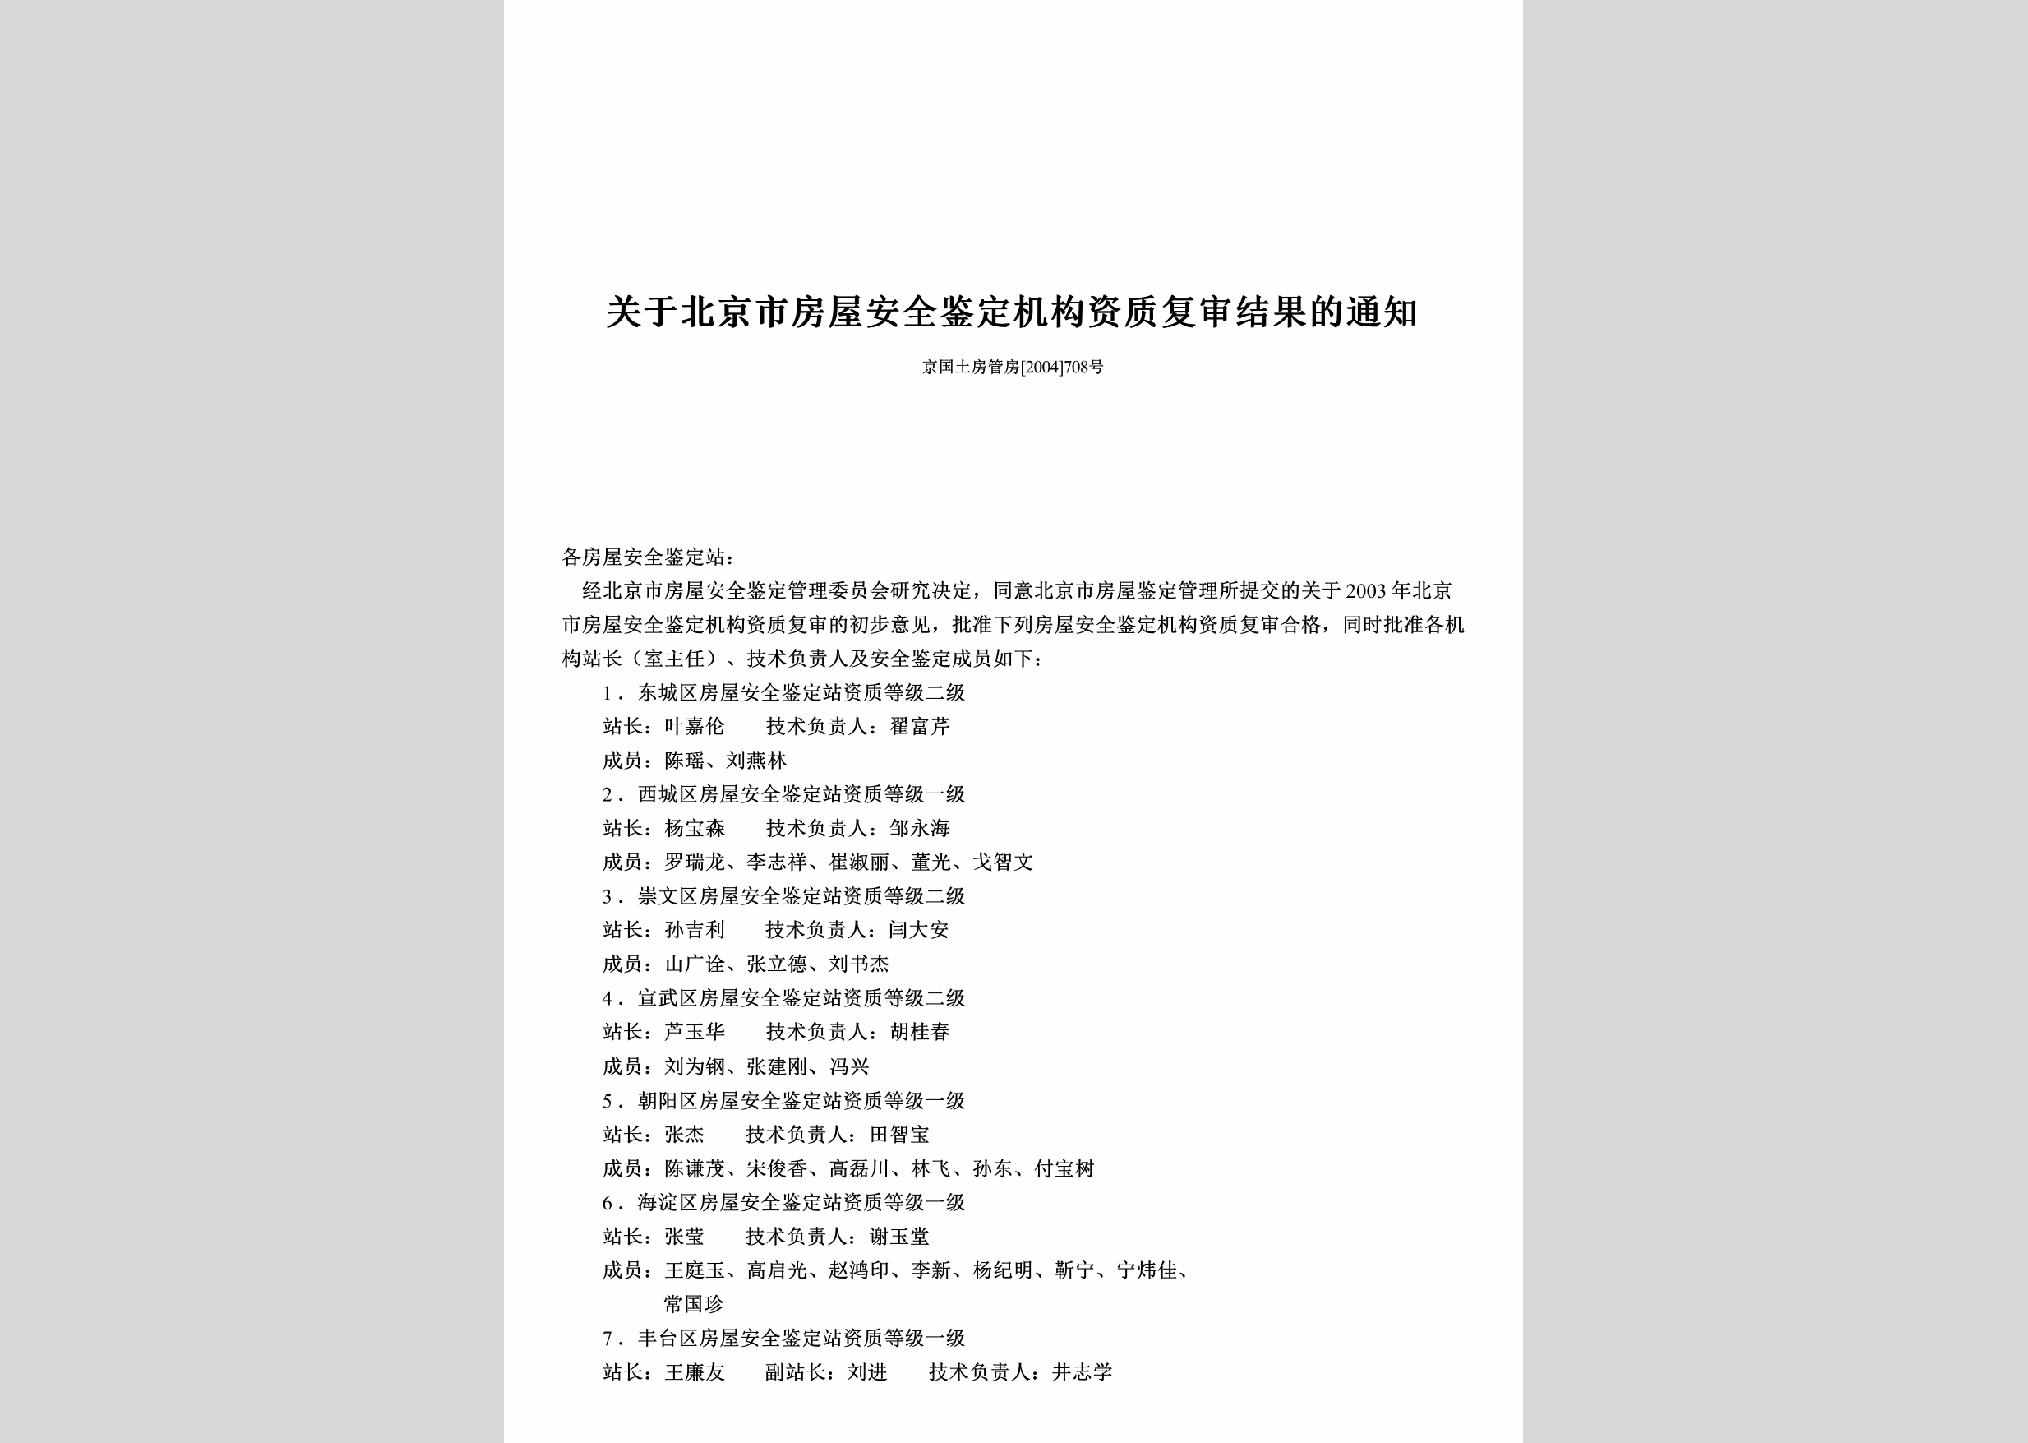 京国土房管房[2004]708号：关于北京市房屋安全鉴定机构资质复审结果的通知